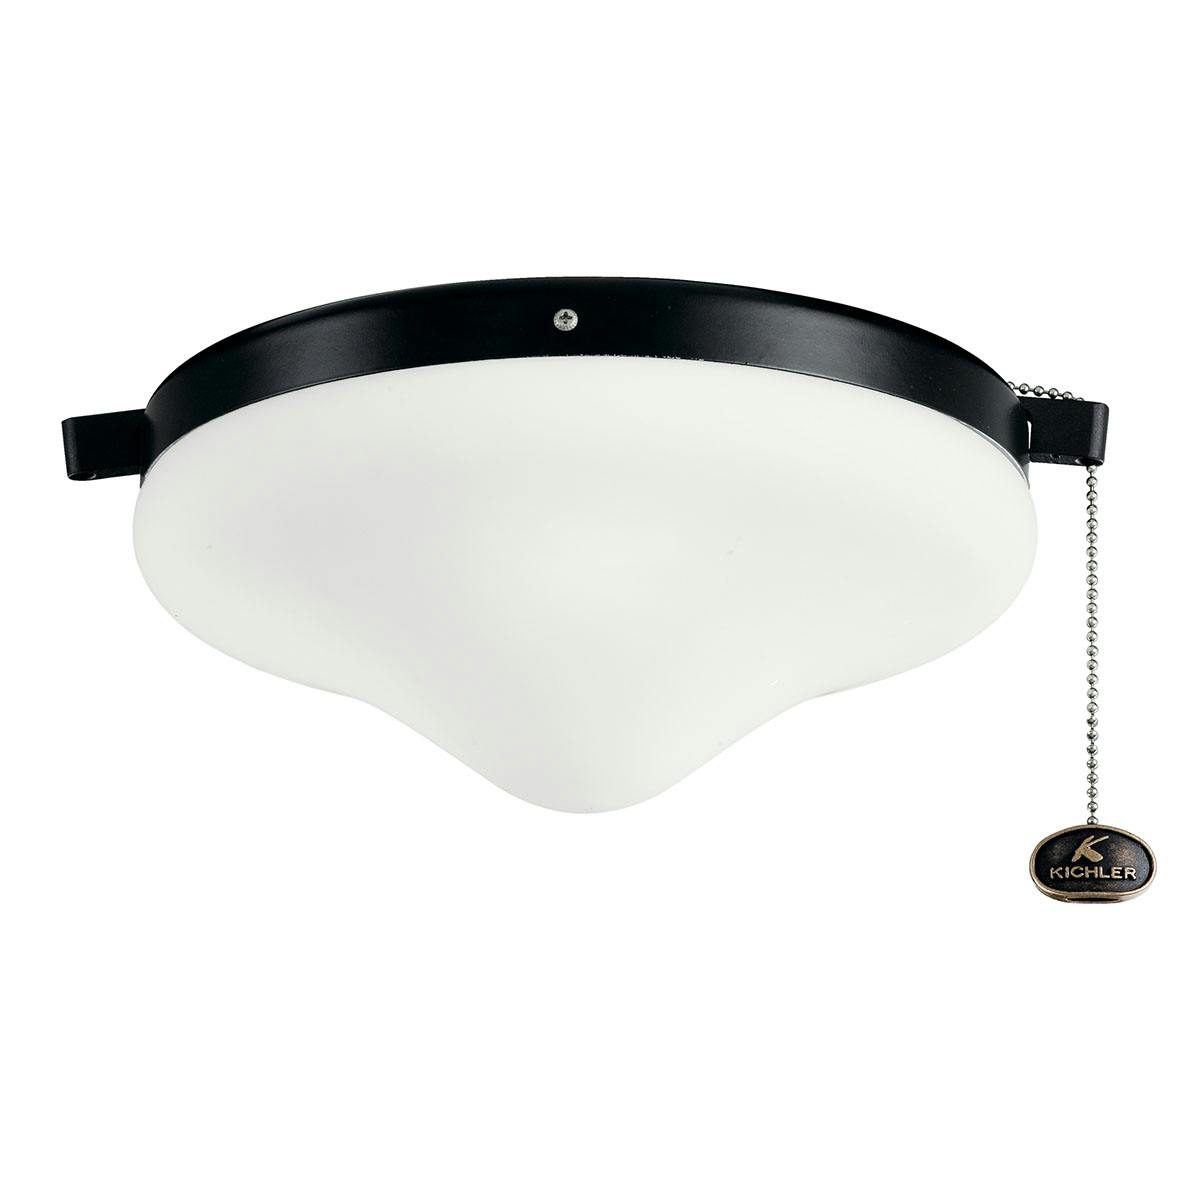 LED Wet Light Kit in Satin Black on a white background